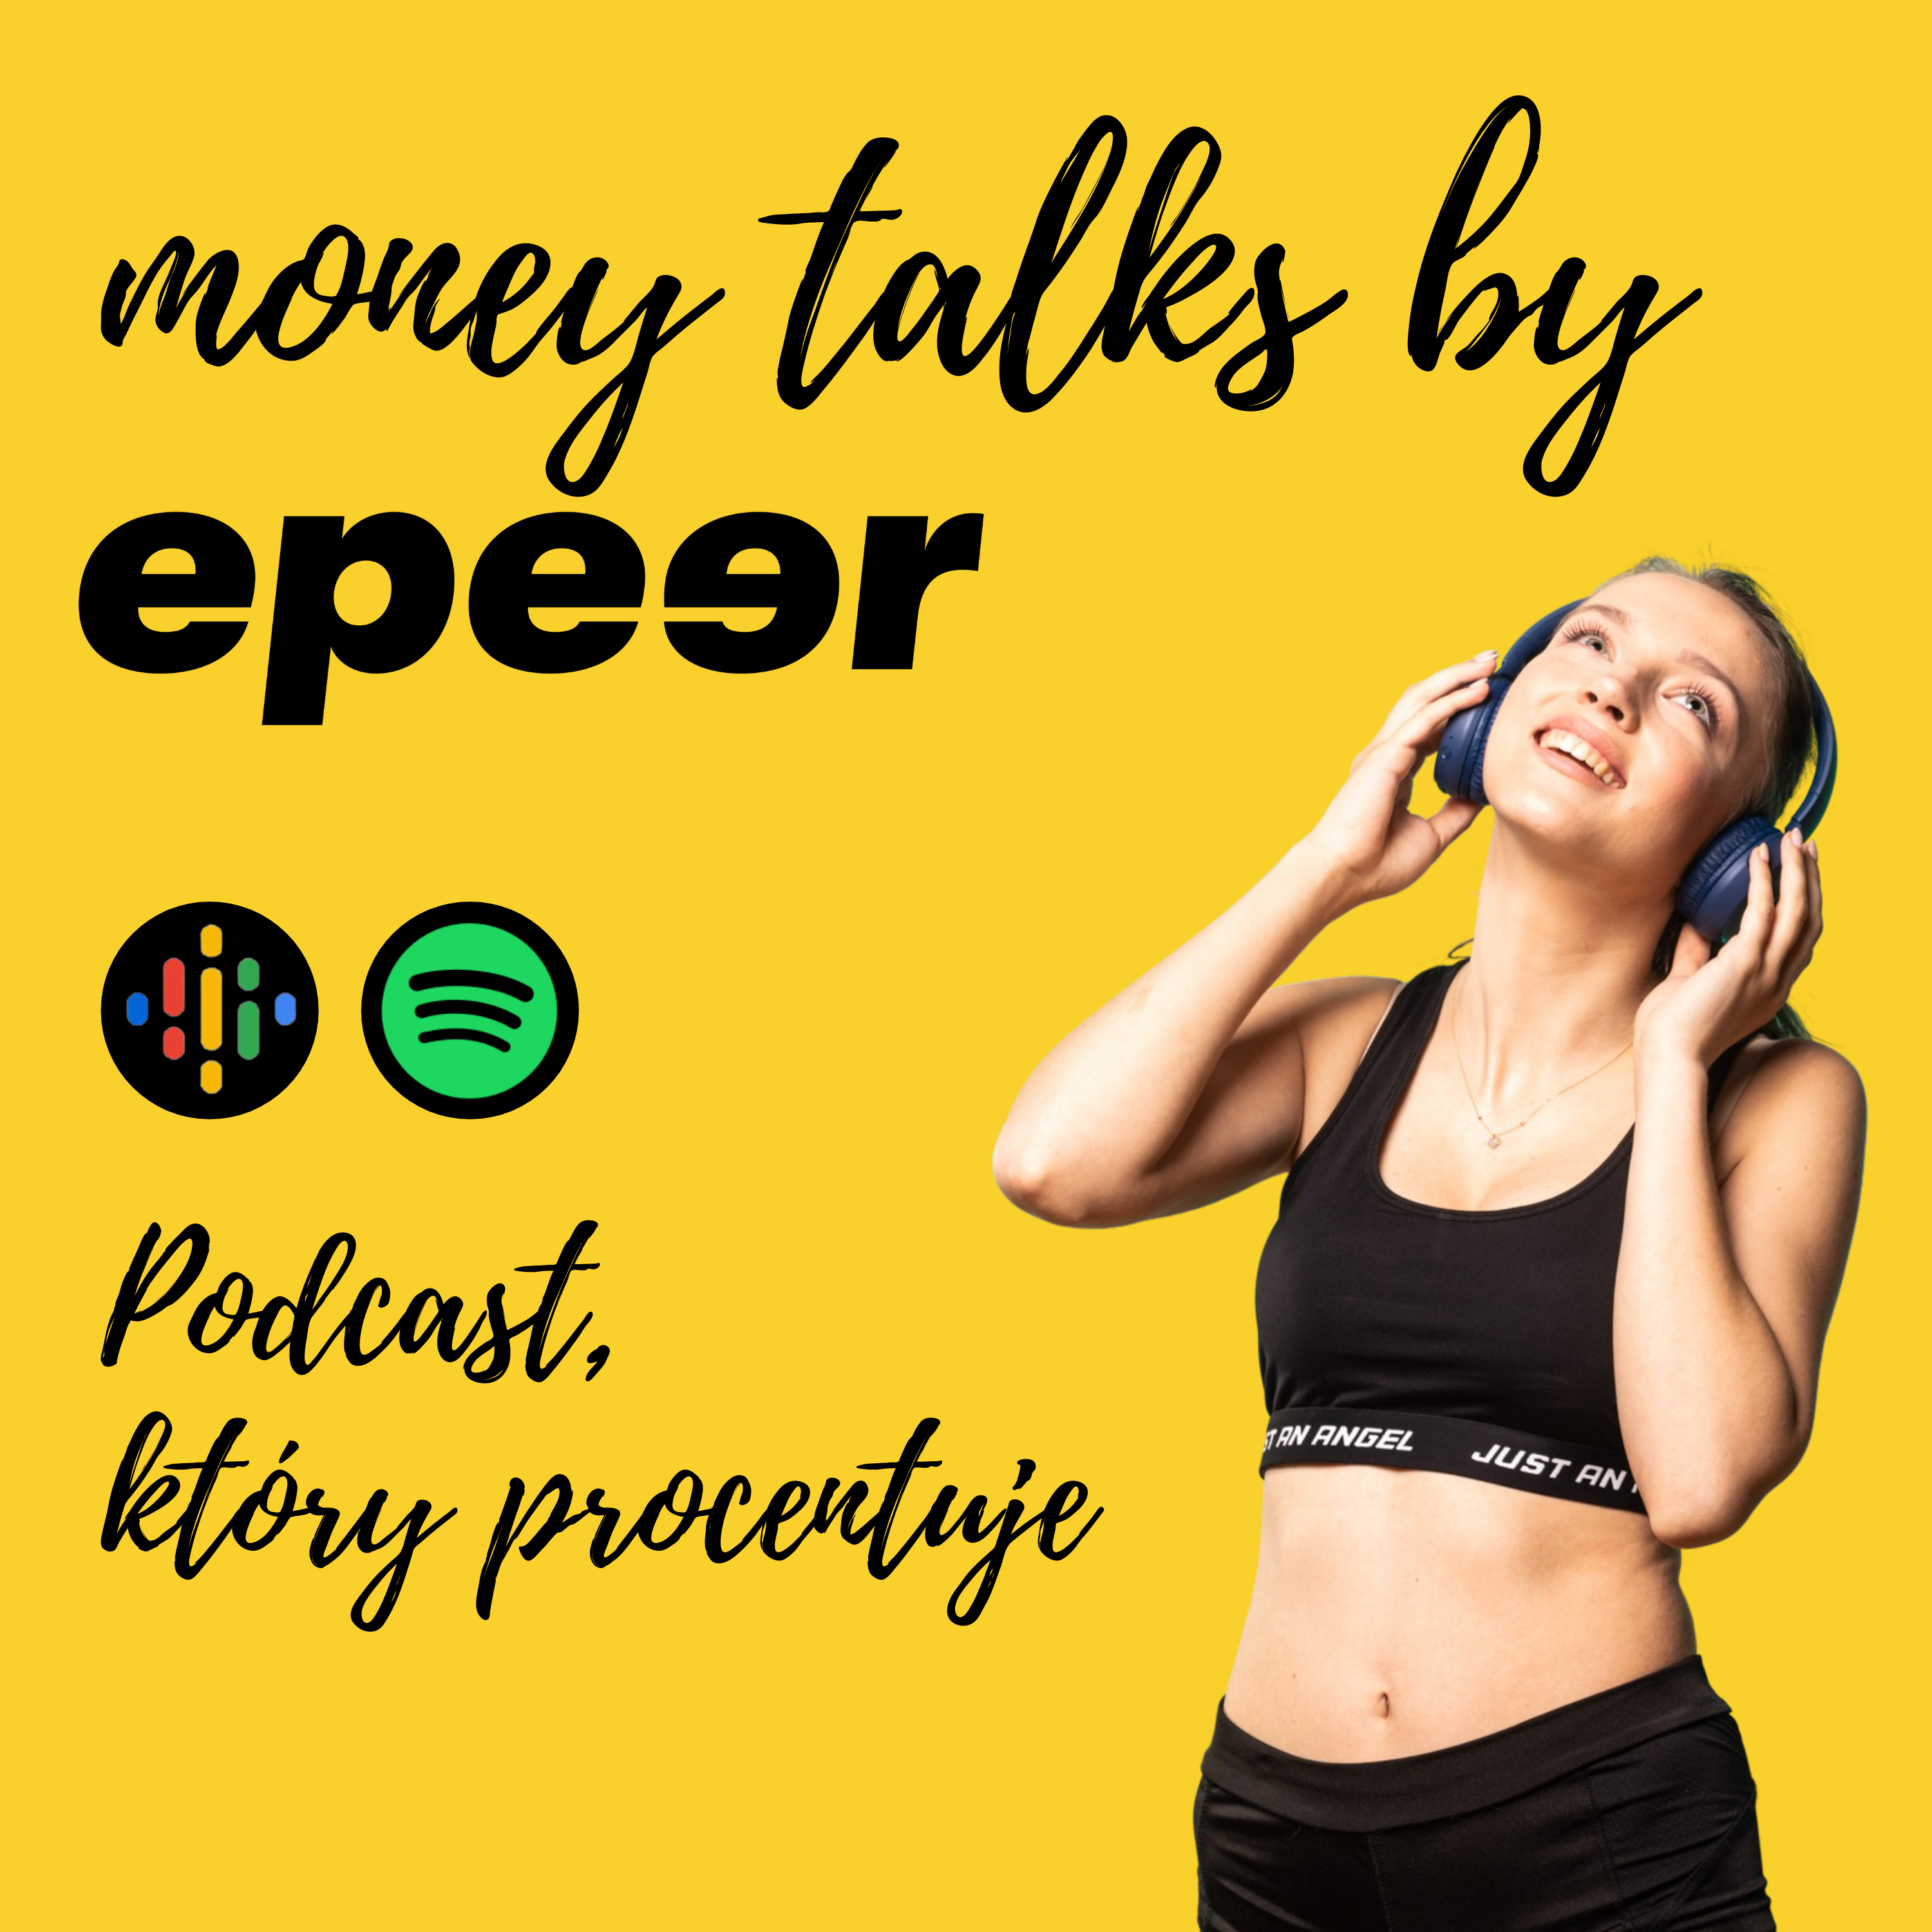 Money talks by epeer. Podcast, który procentuje.